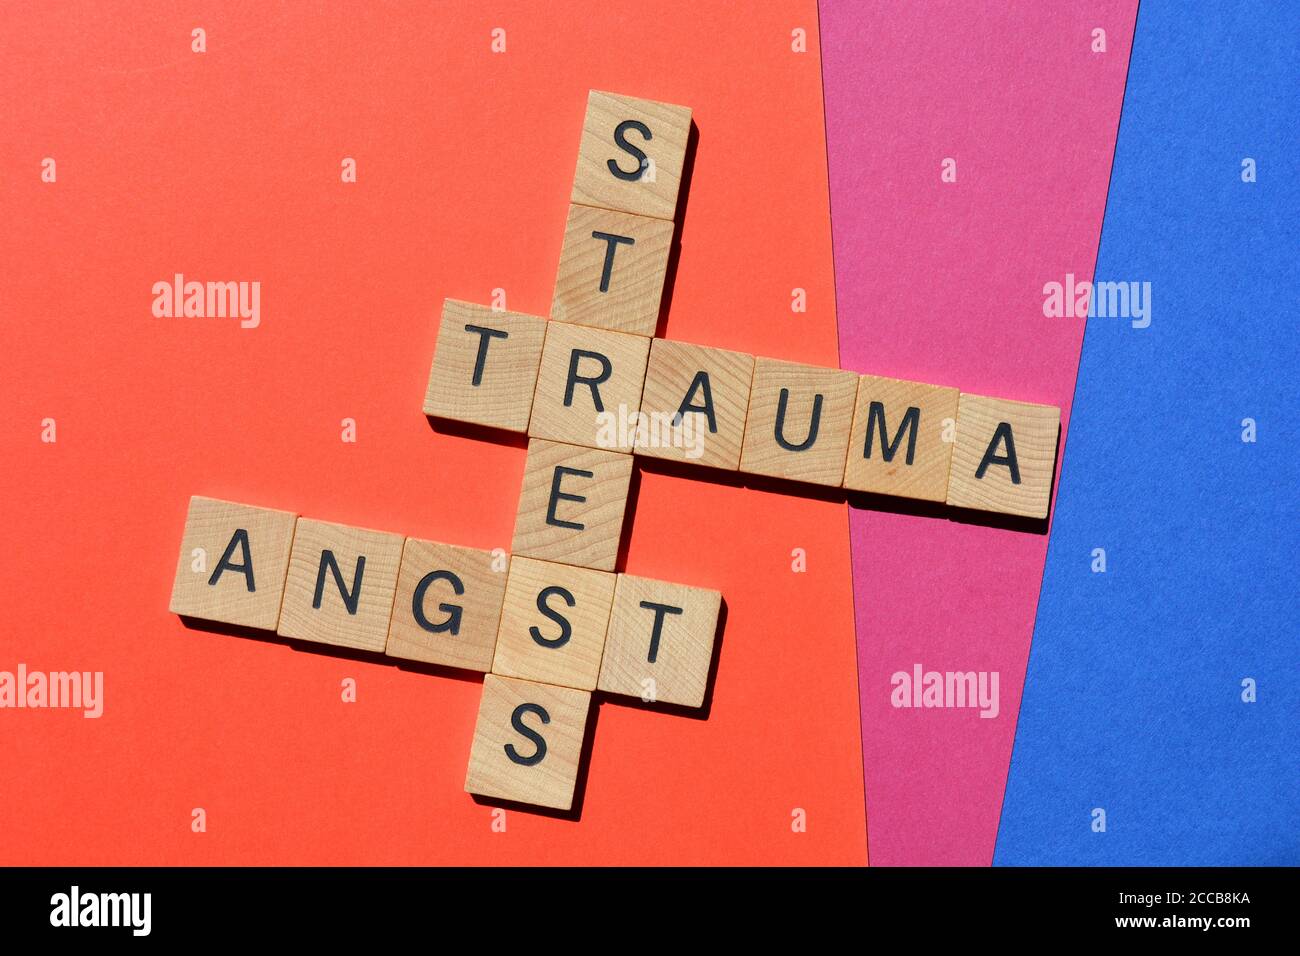 Stress, Trauma, Angst, mots en lettres de l'alphabet en bois sous forme de mots croisés sur fond coloré. Banque D'Images